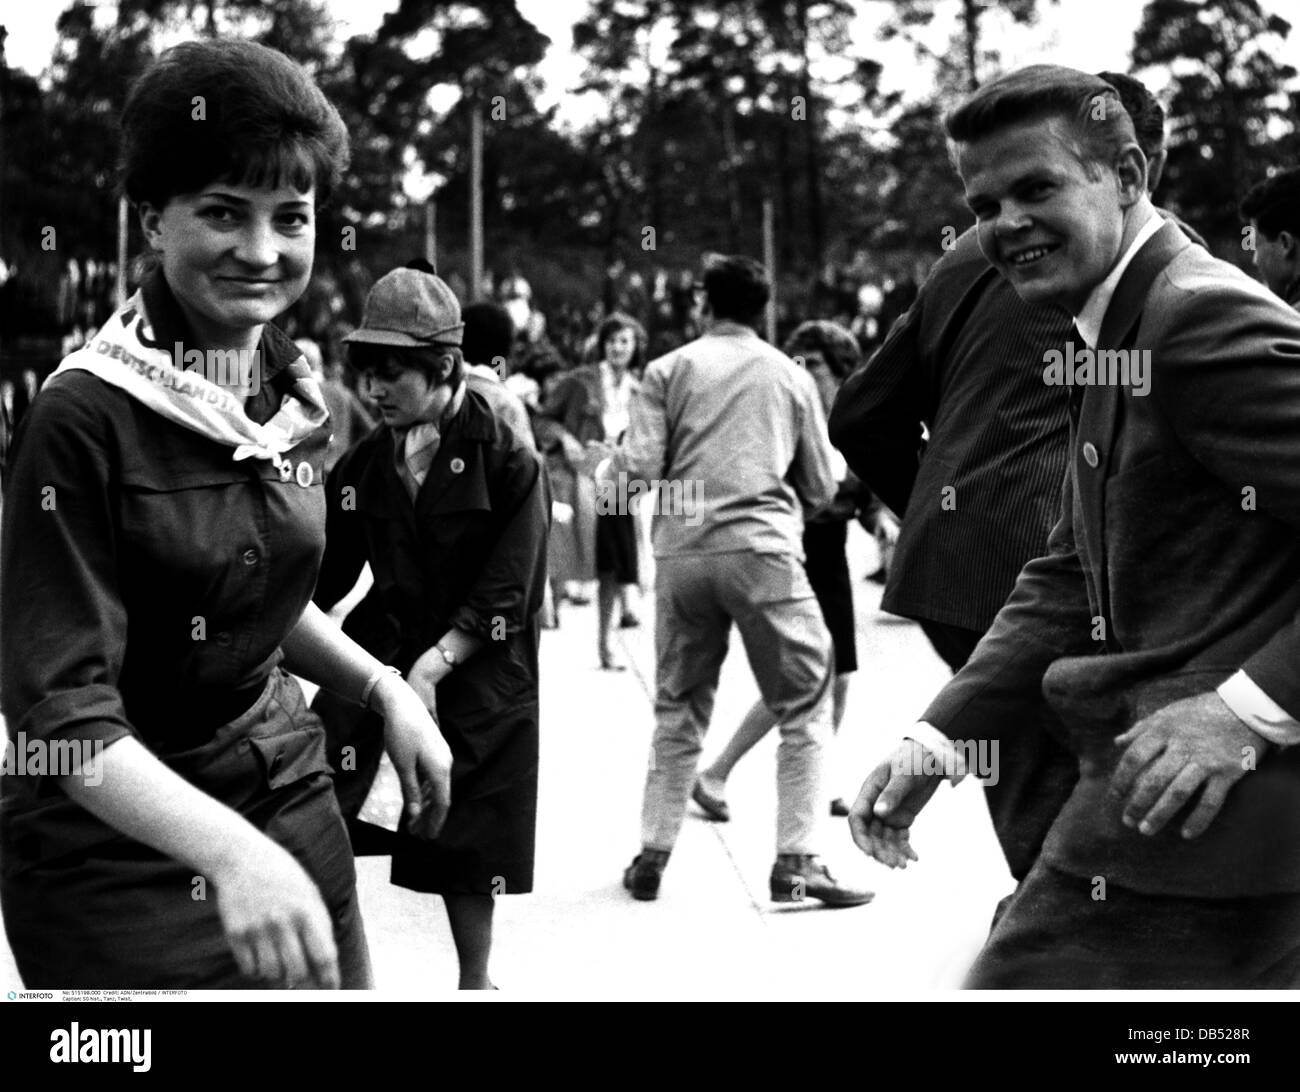 Danza, torsione, adolescente, danza, celebrazione del giornale 'Junge Welt', durante il festival della gioventù, Wuhlheide, Berlino, DDR, 18.5.1964, diritti aggiuntivi-clearences-non disponibile Foto Stock